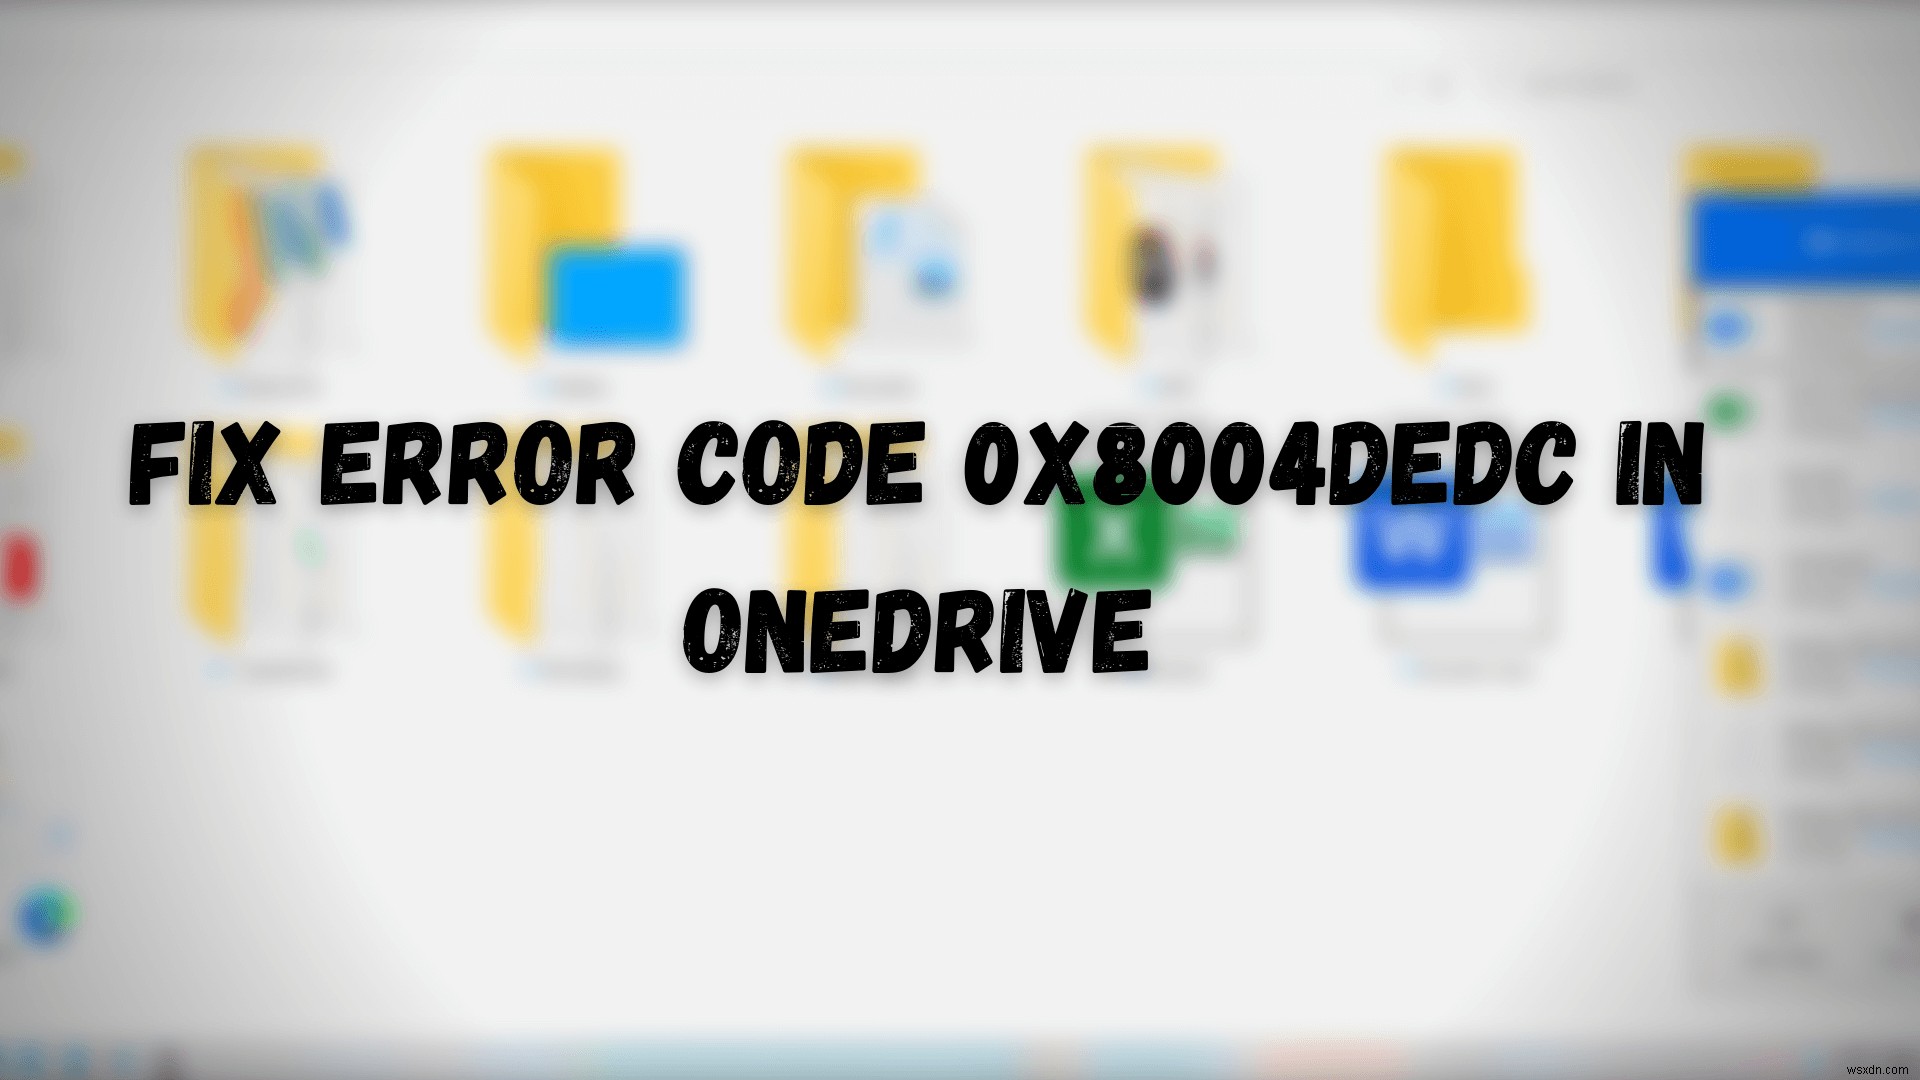 แก้ไขรหัสข้อผิดพลาด 0x8004dedc ใน OneDrive (ปัญหาตำแหน่งทางภูมิศาสตร์) 